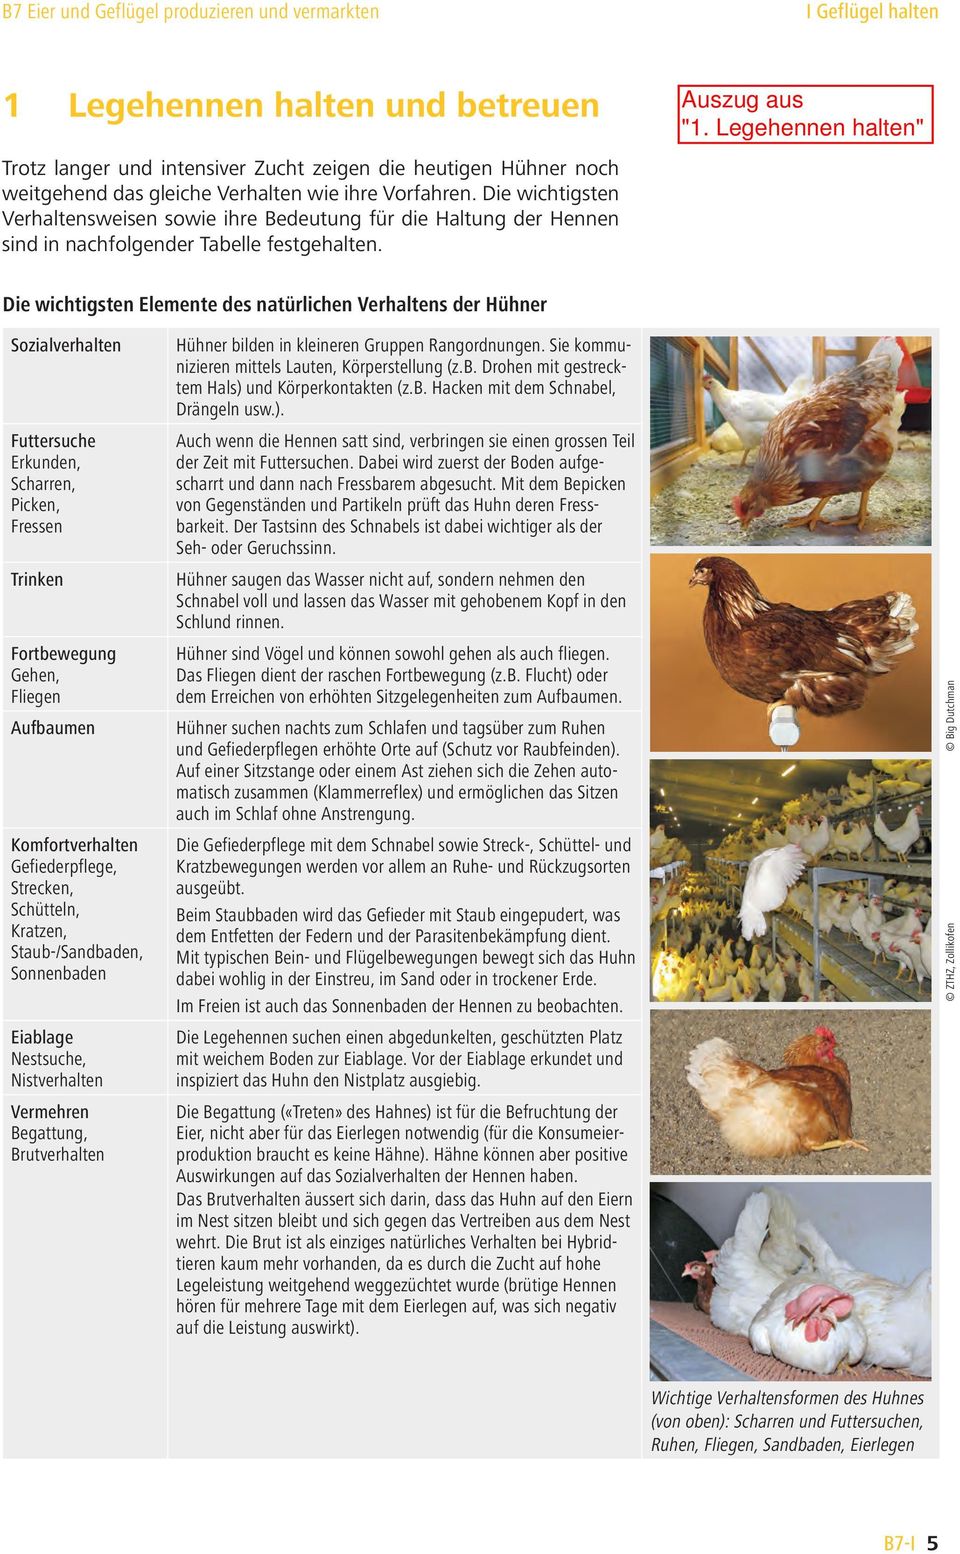 Die wichtigsten Elemente des natürlichen Verhaltens der Hühner Sozialverhalten Futtersuche Erkunden, Scharren, Picken, Fressen Trinken Fortbewegung Gehen, Fliegen Aufbaumen Komfortverhalten